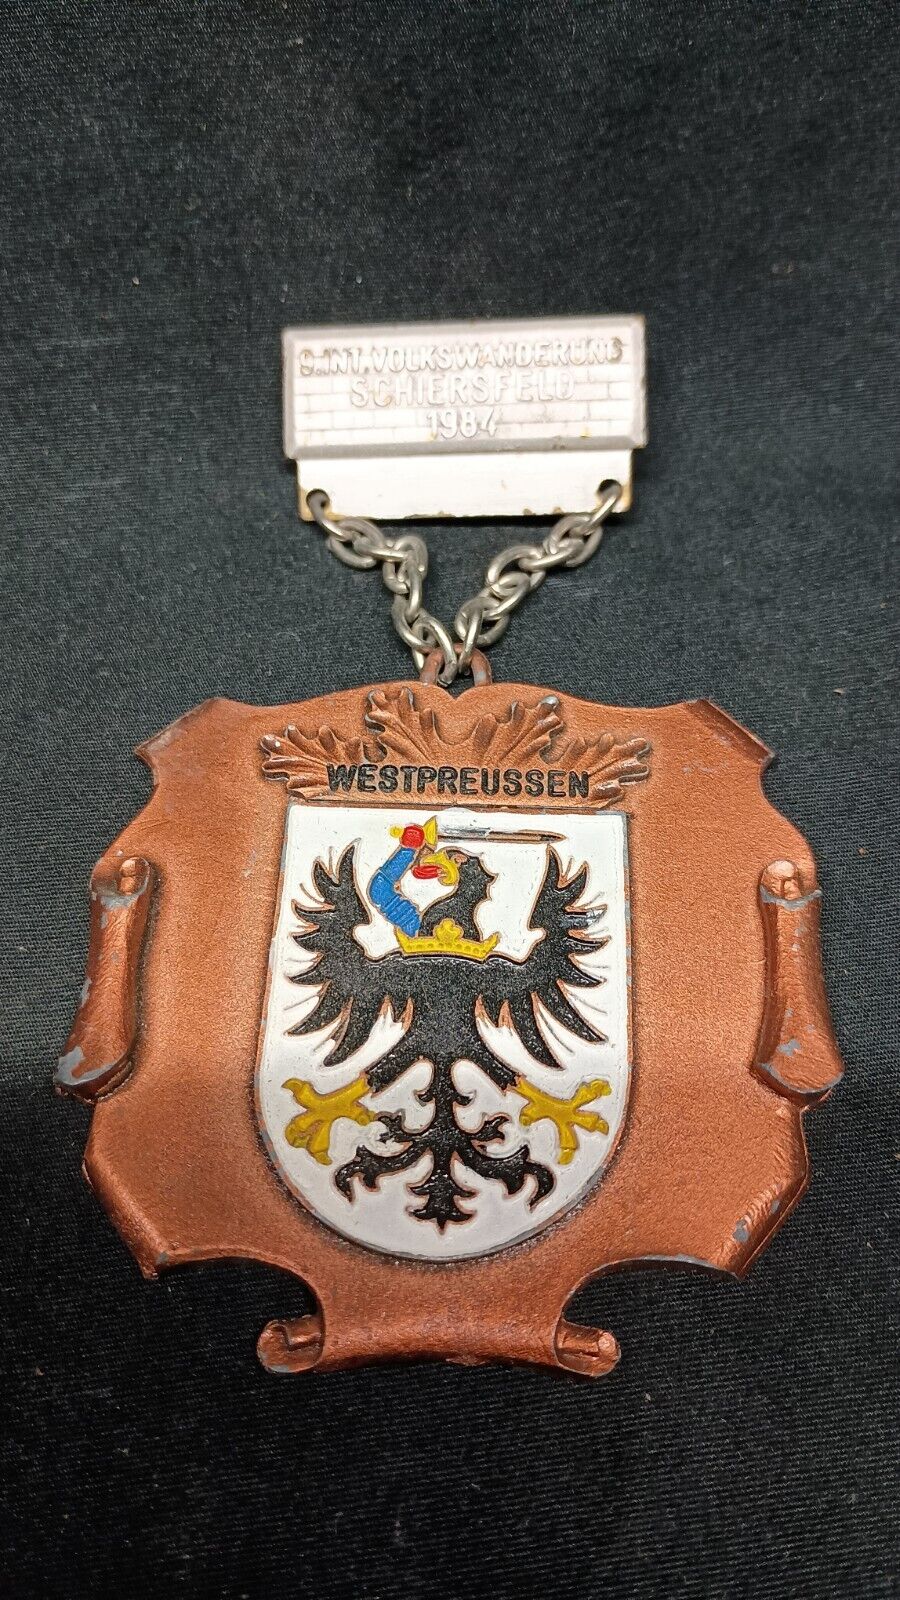 Vintage German VOLKSWANDERUNG SCHIERSFELD 1984 WESTPREUSSEN Military Medal